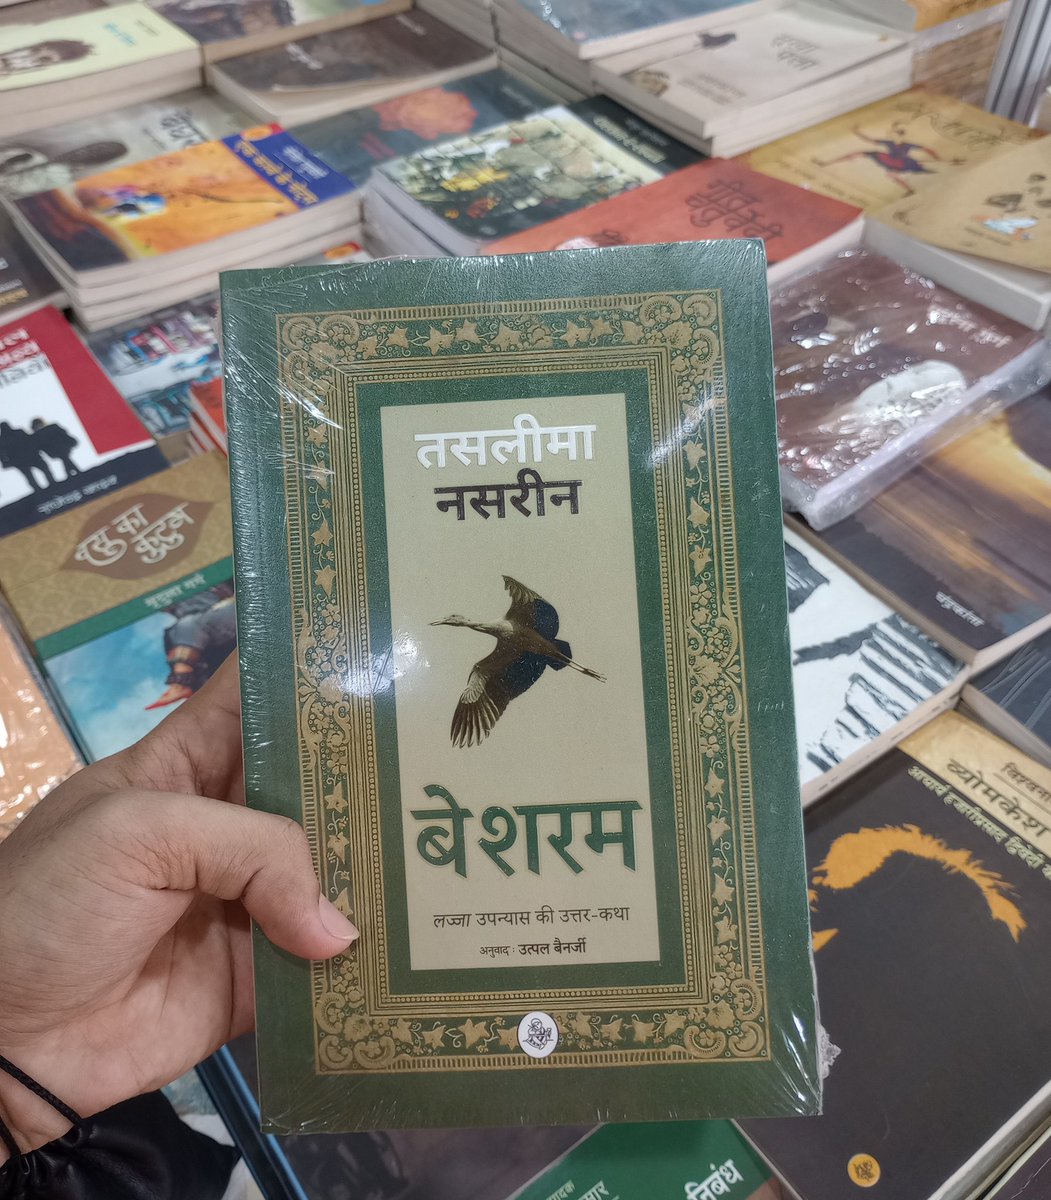 तसलीमा नसरीन जी की पुस्तक 'बेशरम' 210₹ में व्हाट्सएप 7727874770 पर एक मैसेज से अपना ऑर्डर करें।

1. बेशरम ( 250₹ एमआरपी)
लज्जा उपन्यास की उत्तर कथा
उपन्यास
तसलीमा नसरीन 
अनुवाद:- उत्पल बैनर्जी।

#taslimanasrin #besharam 
#hindi #hindibook
#sahityaarushi